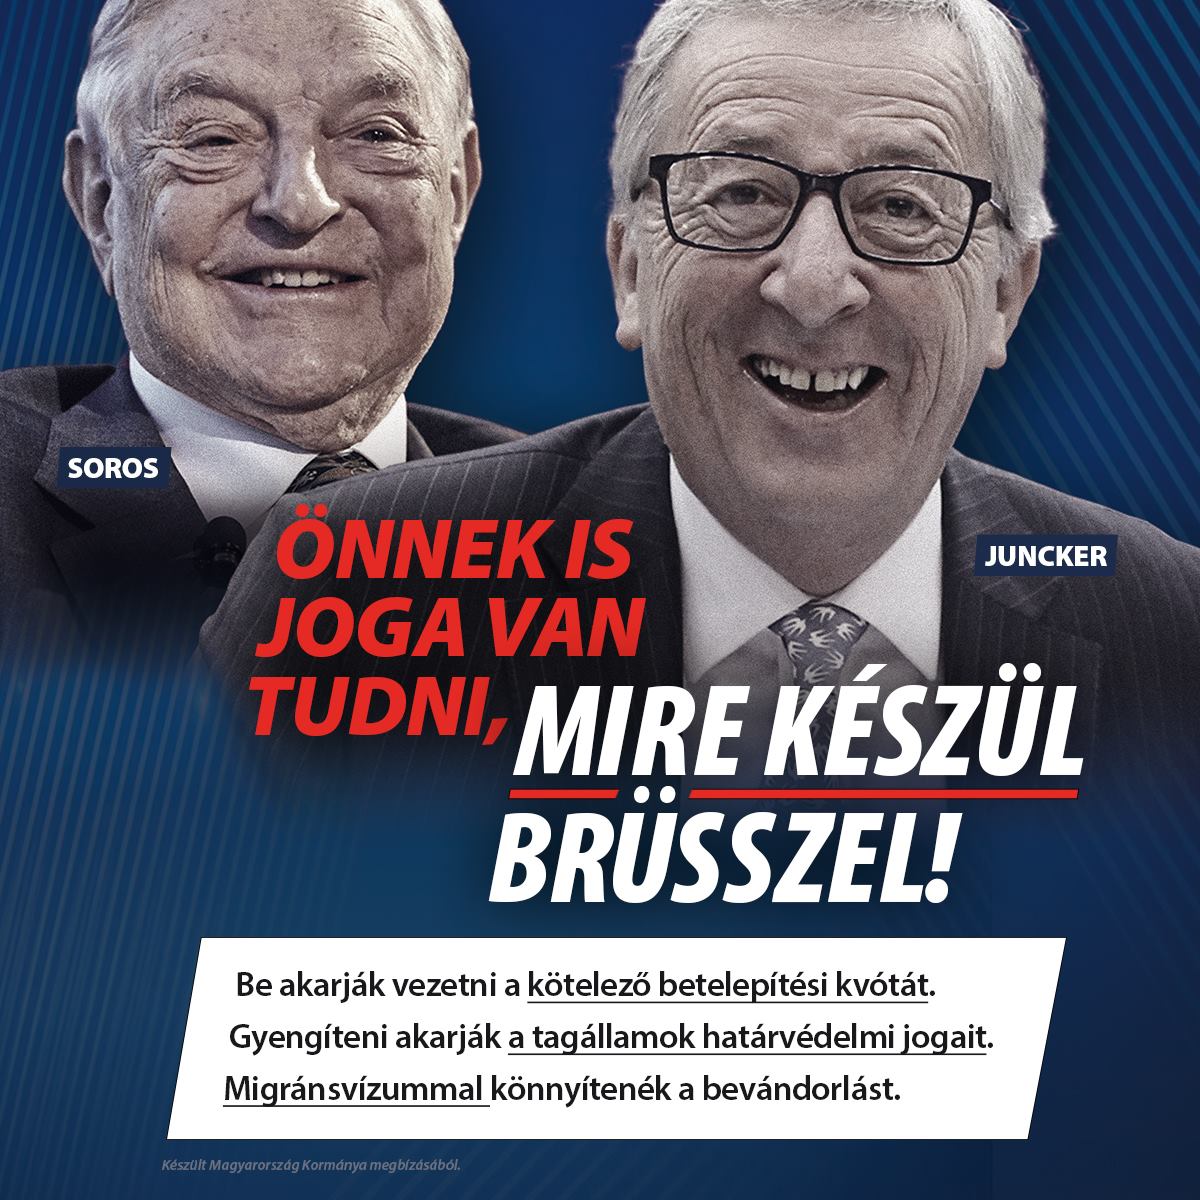 A Néppárt elnöke is kiakadt a kormány új kampányán, Juncker kirakná a Fideszt